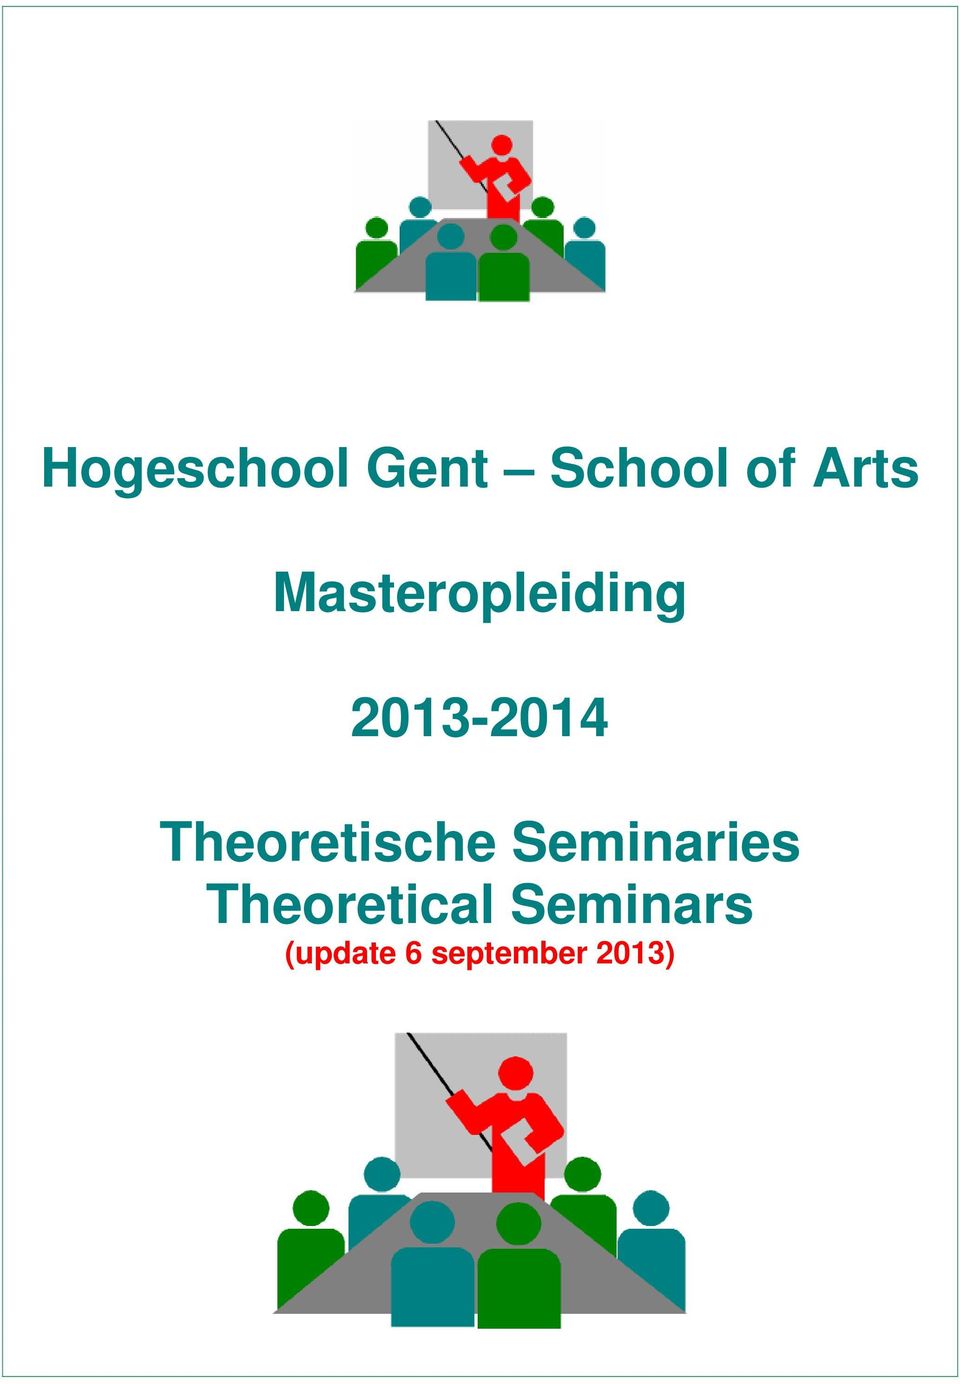 Theoretische Seminaries